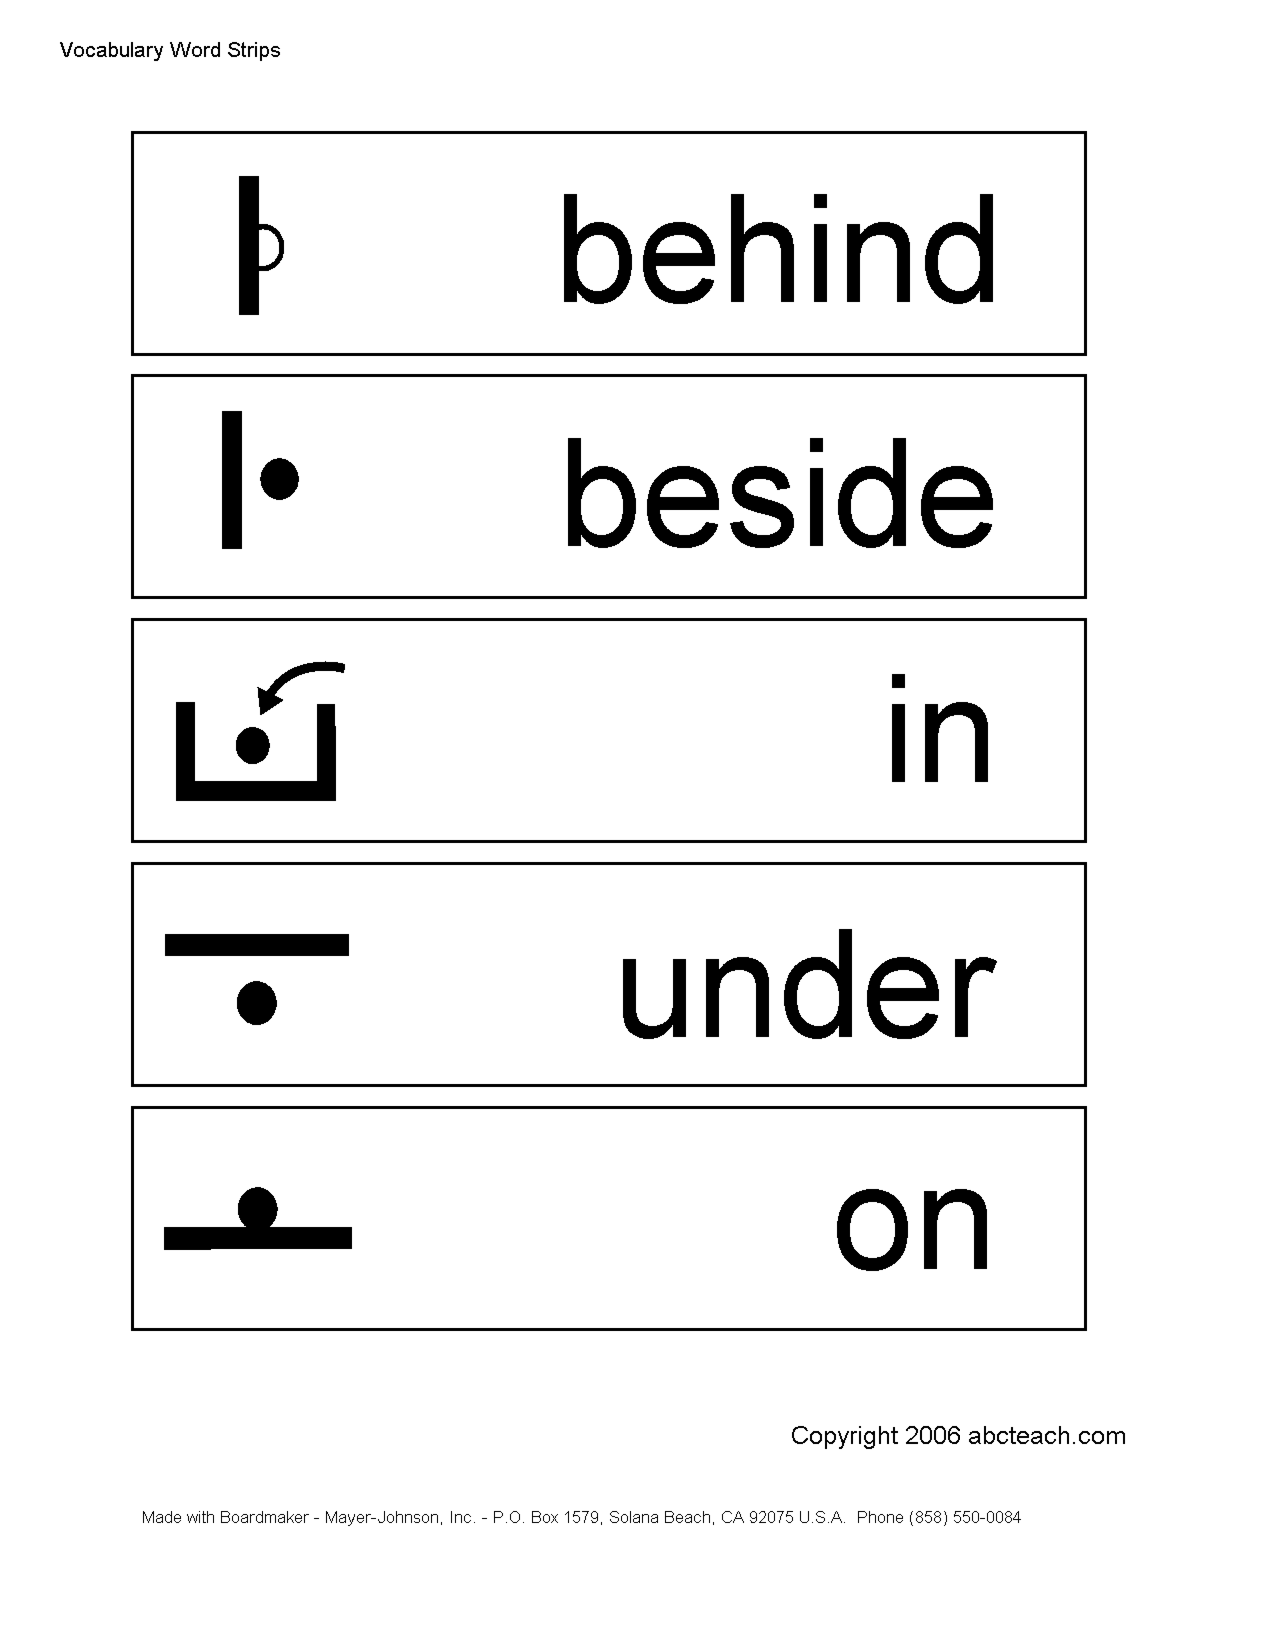 Preposition Worksheets Image